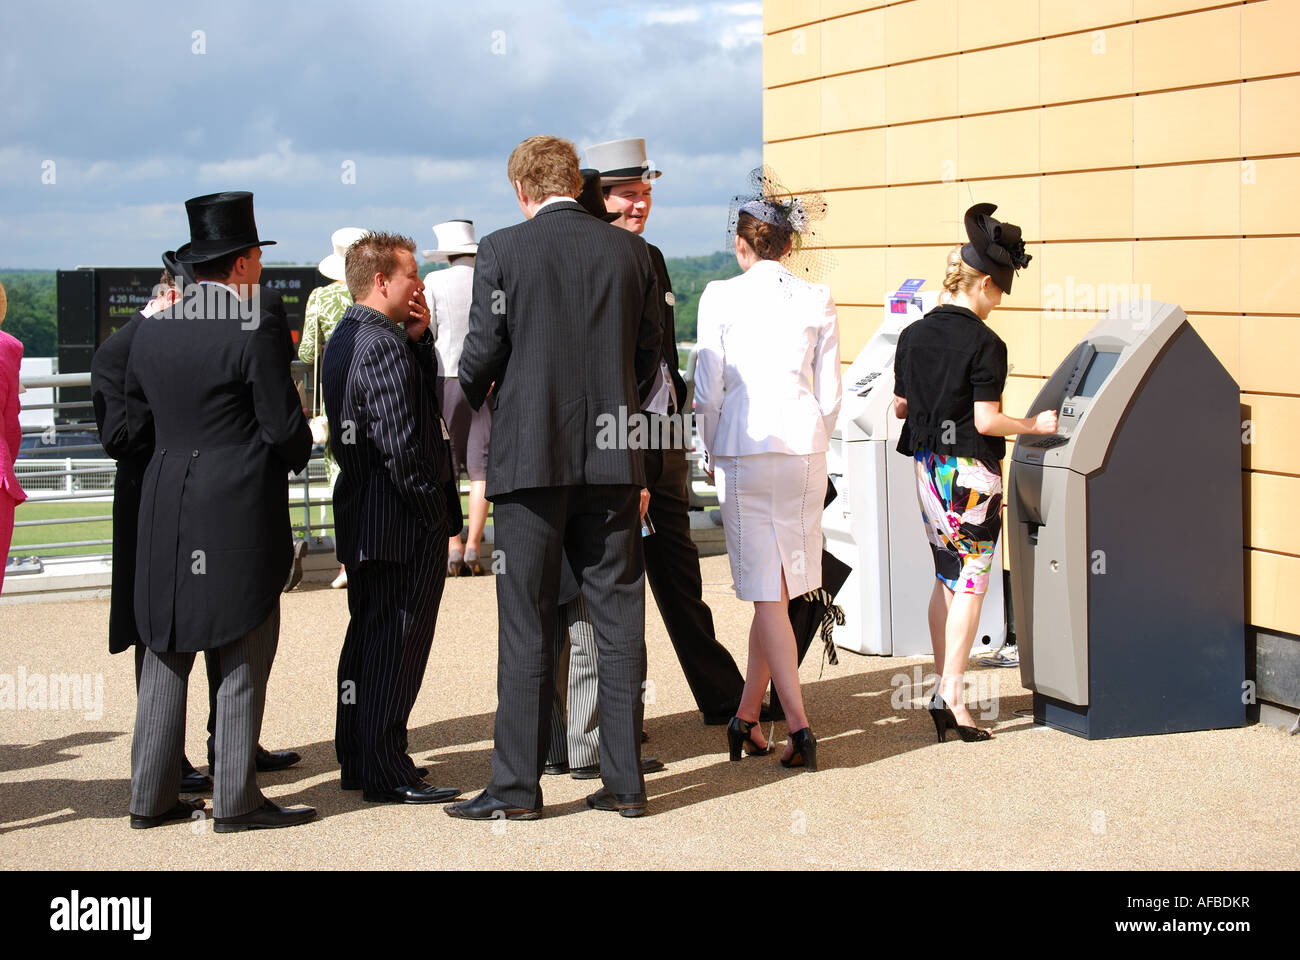 Warteschlange für Geldautomaten in Royal Enclosure, Royal Ascot-Meeting, Ascot Racecourse in Ascot, Berkshire, England, Vereinigtes Königreich Stockfoto